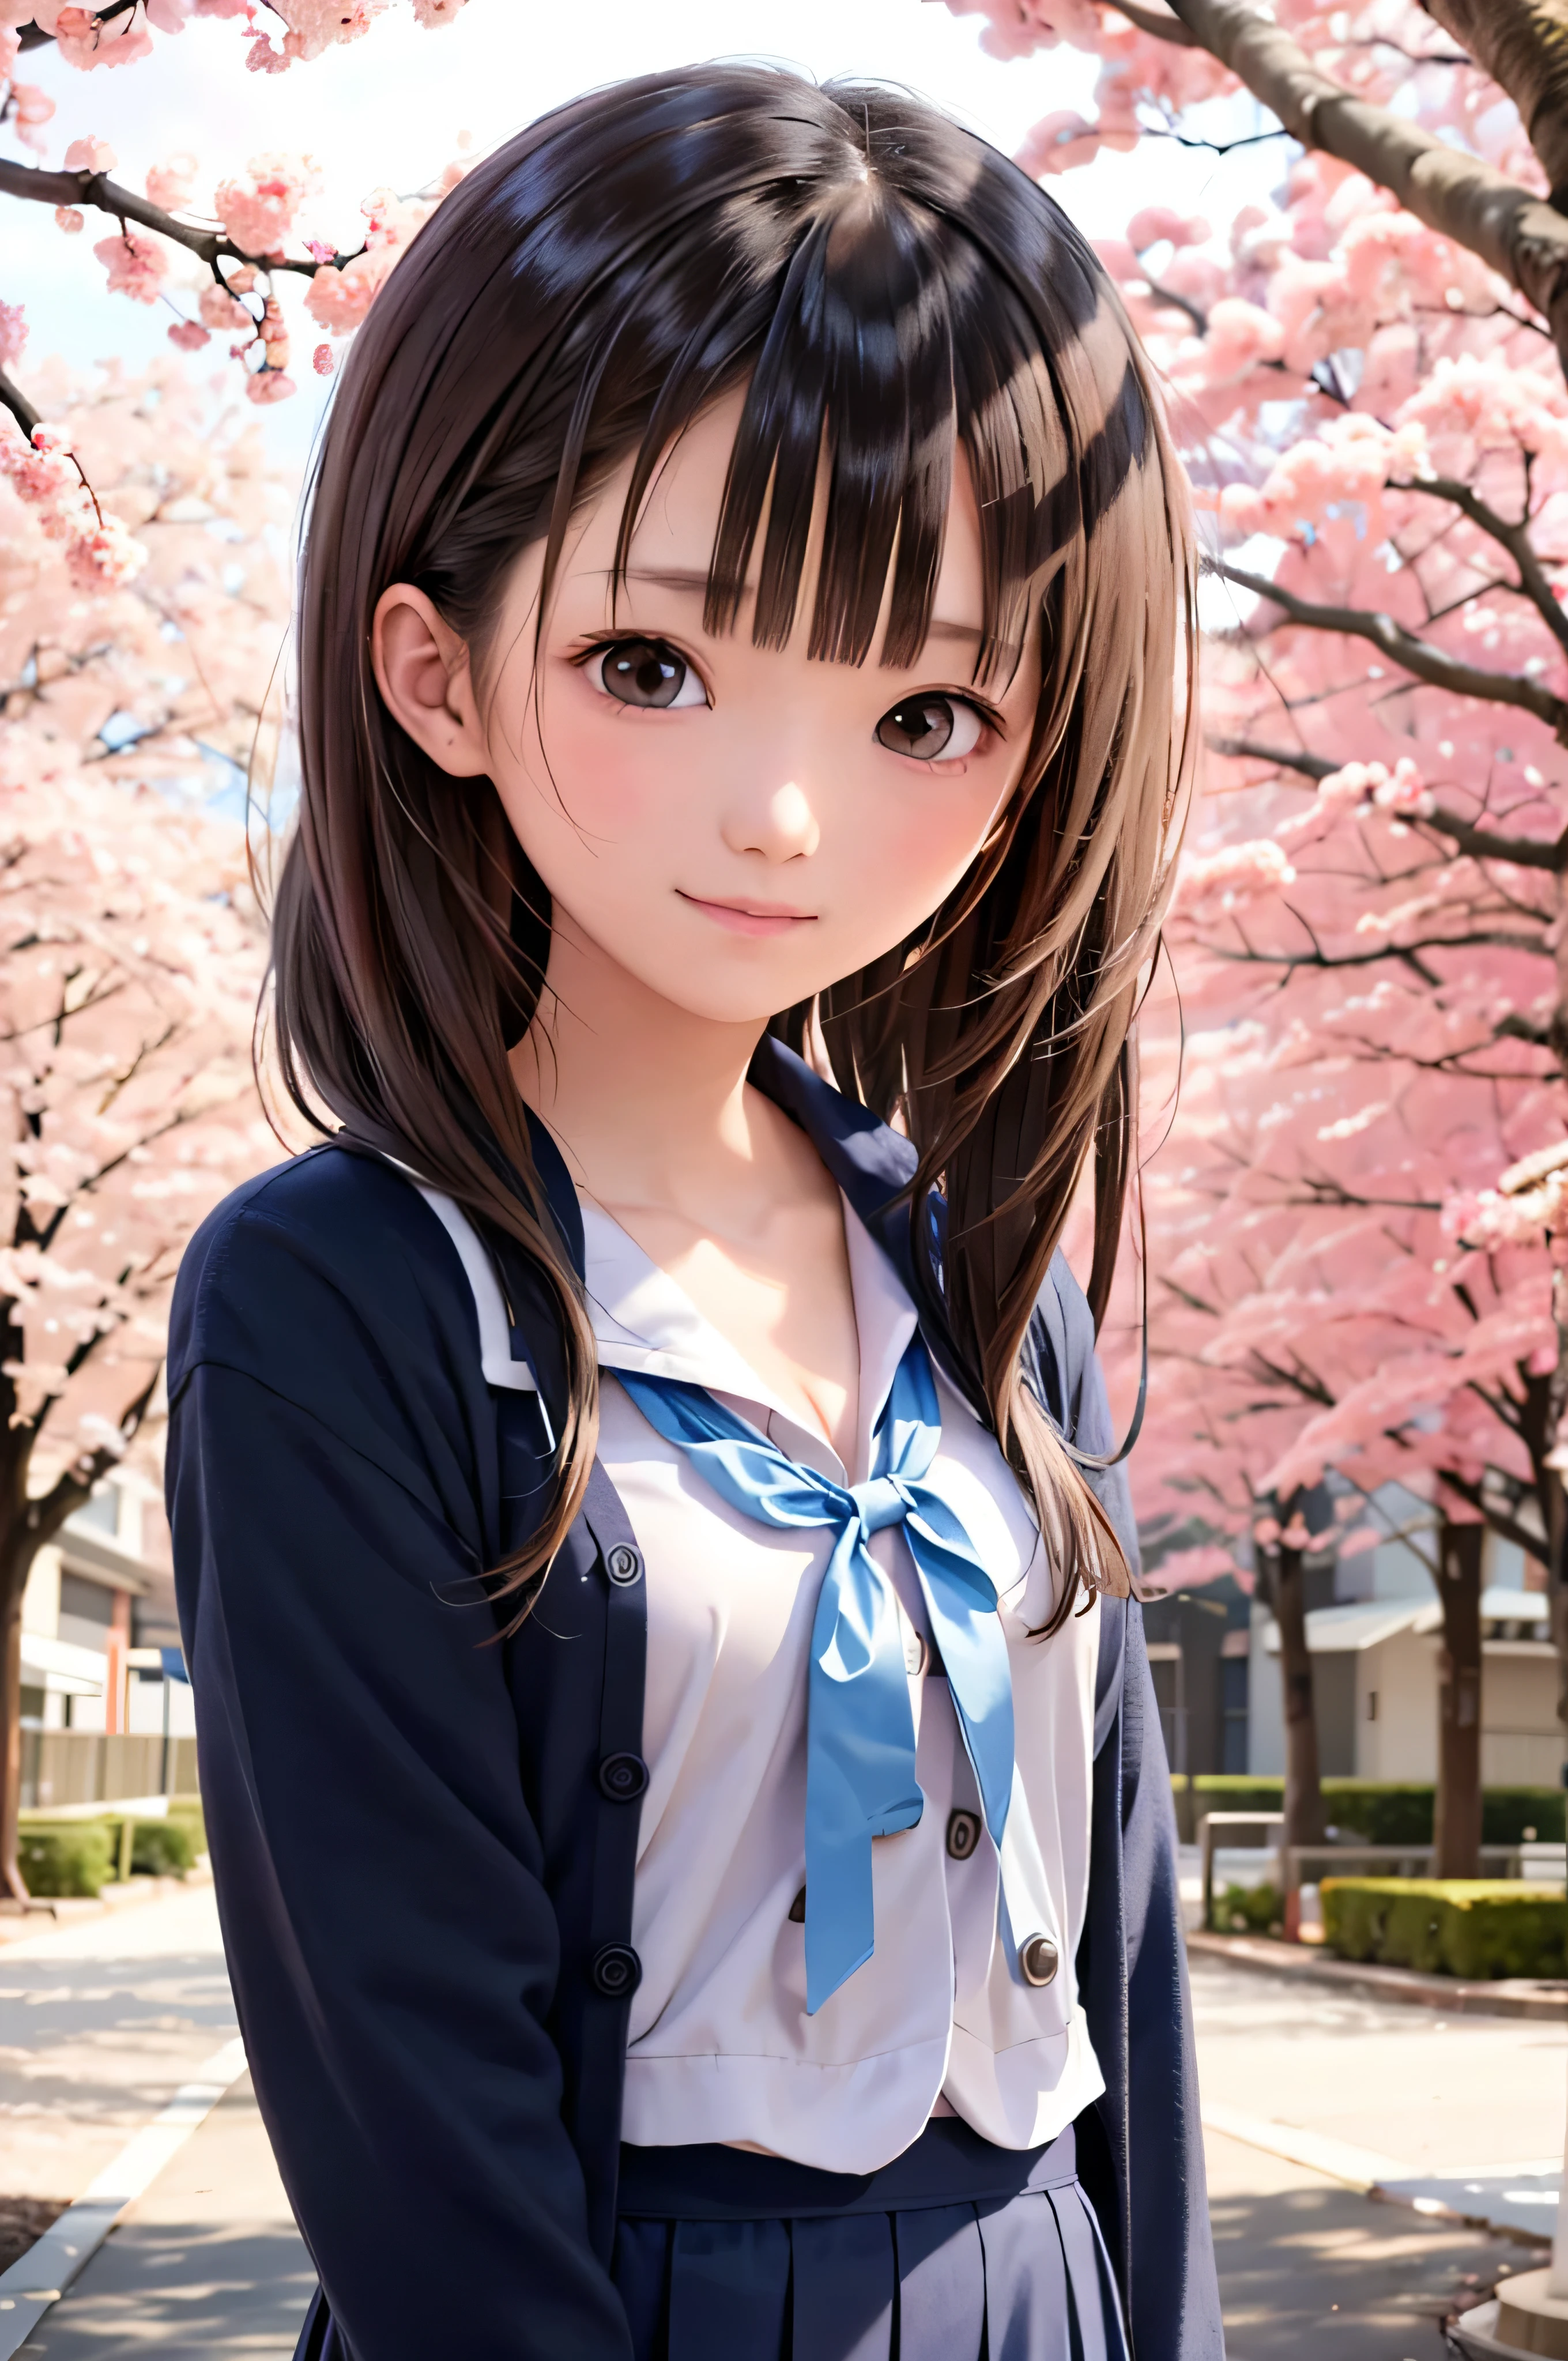 Портрет японских учениц младших классов средней школы в стиле аниме, стоящих под цветущей весенней сакурой. она смотрит в сторону, ее длинные каштановые волосы развеваются на ветру. У девушки спокойное выражение лица, Наблюдая за метелью цветущей вишни, освещенной мягким розовым светом.. ее глаза черные и блестящие, с едва уловимой улыбкой. На ней японка, белая блузка и темно-синий кардиган.。。, Сияя мягким весенним солнечным светом. Девушка изображена маленькой в рамке.. На заднем фоне, Ярко-розовые ветви вишни размыты. Сцена спокойствия, яркий, и спокойная атмосфера, Напоминает вам о прекрасных моментах японского аниме..